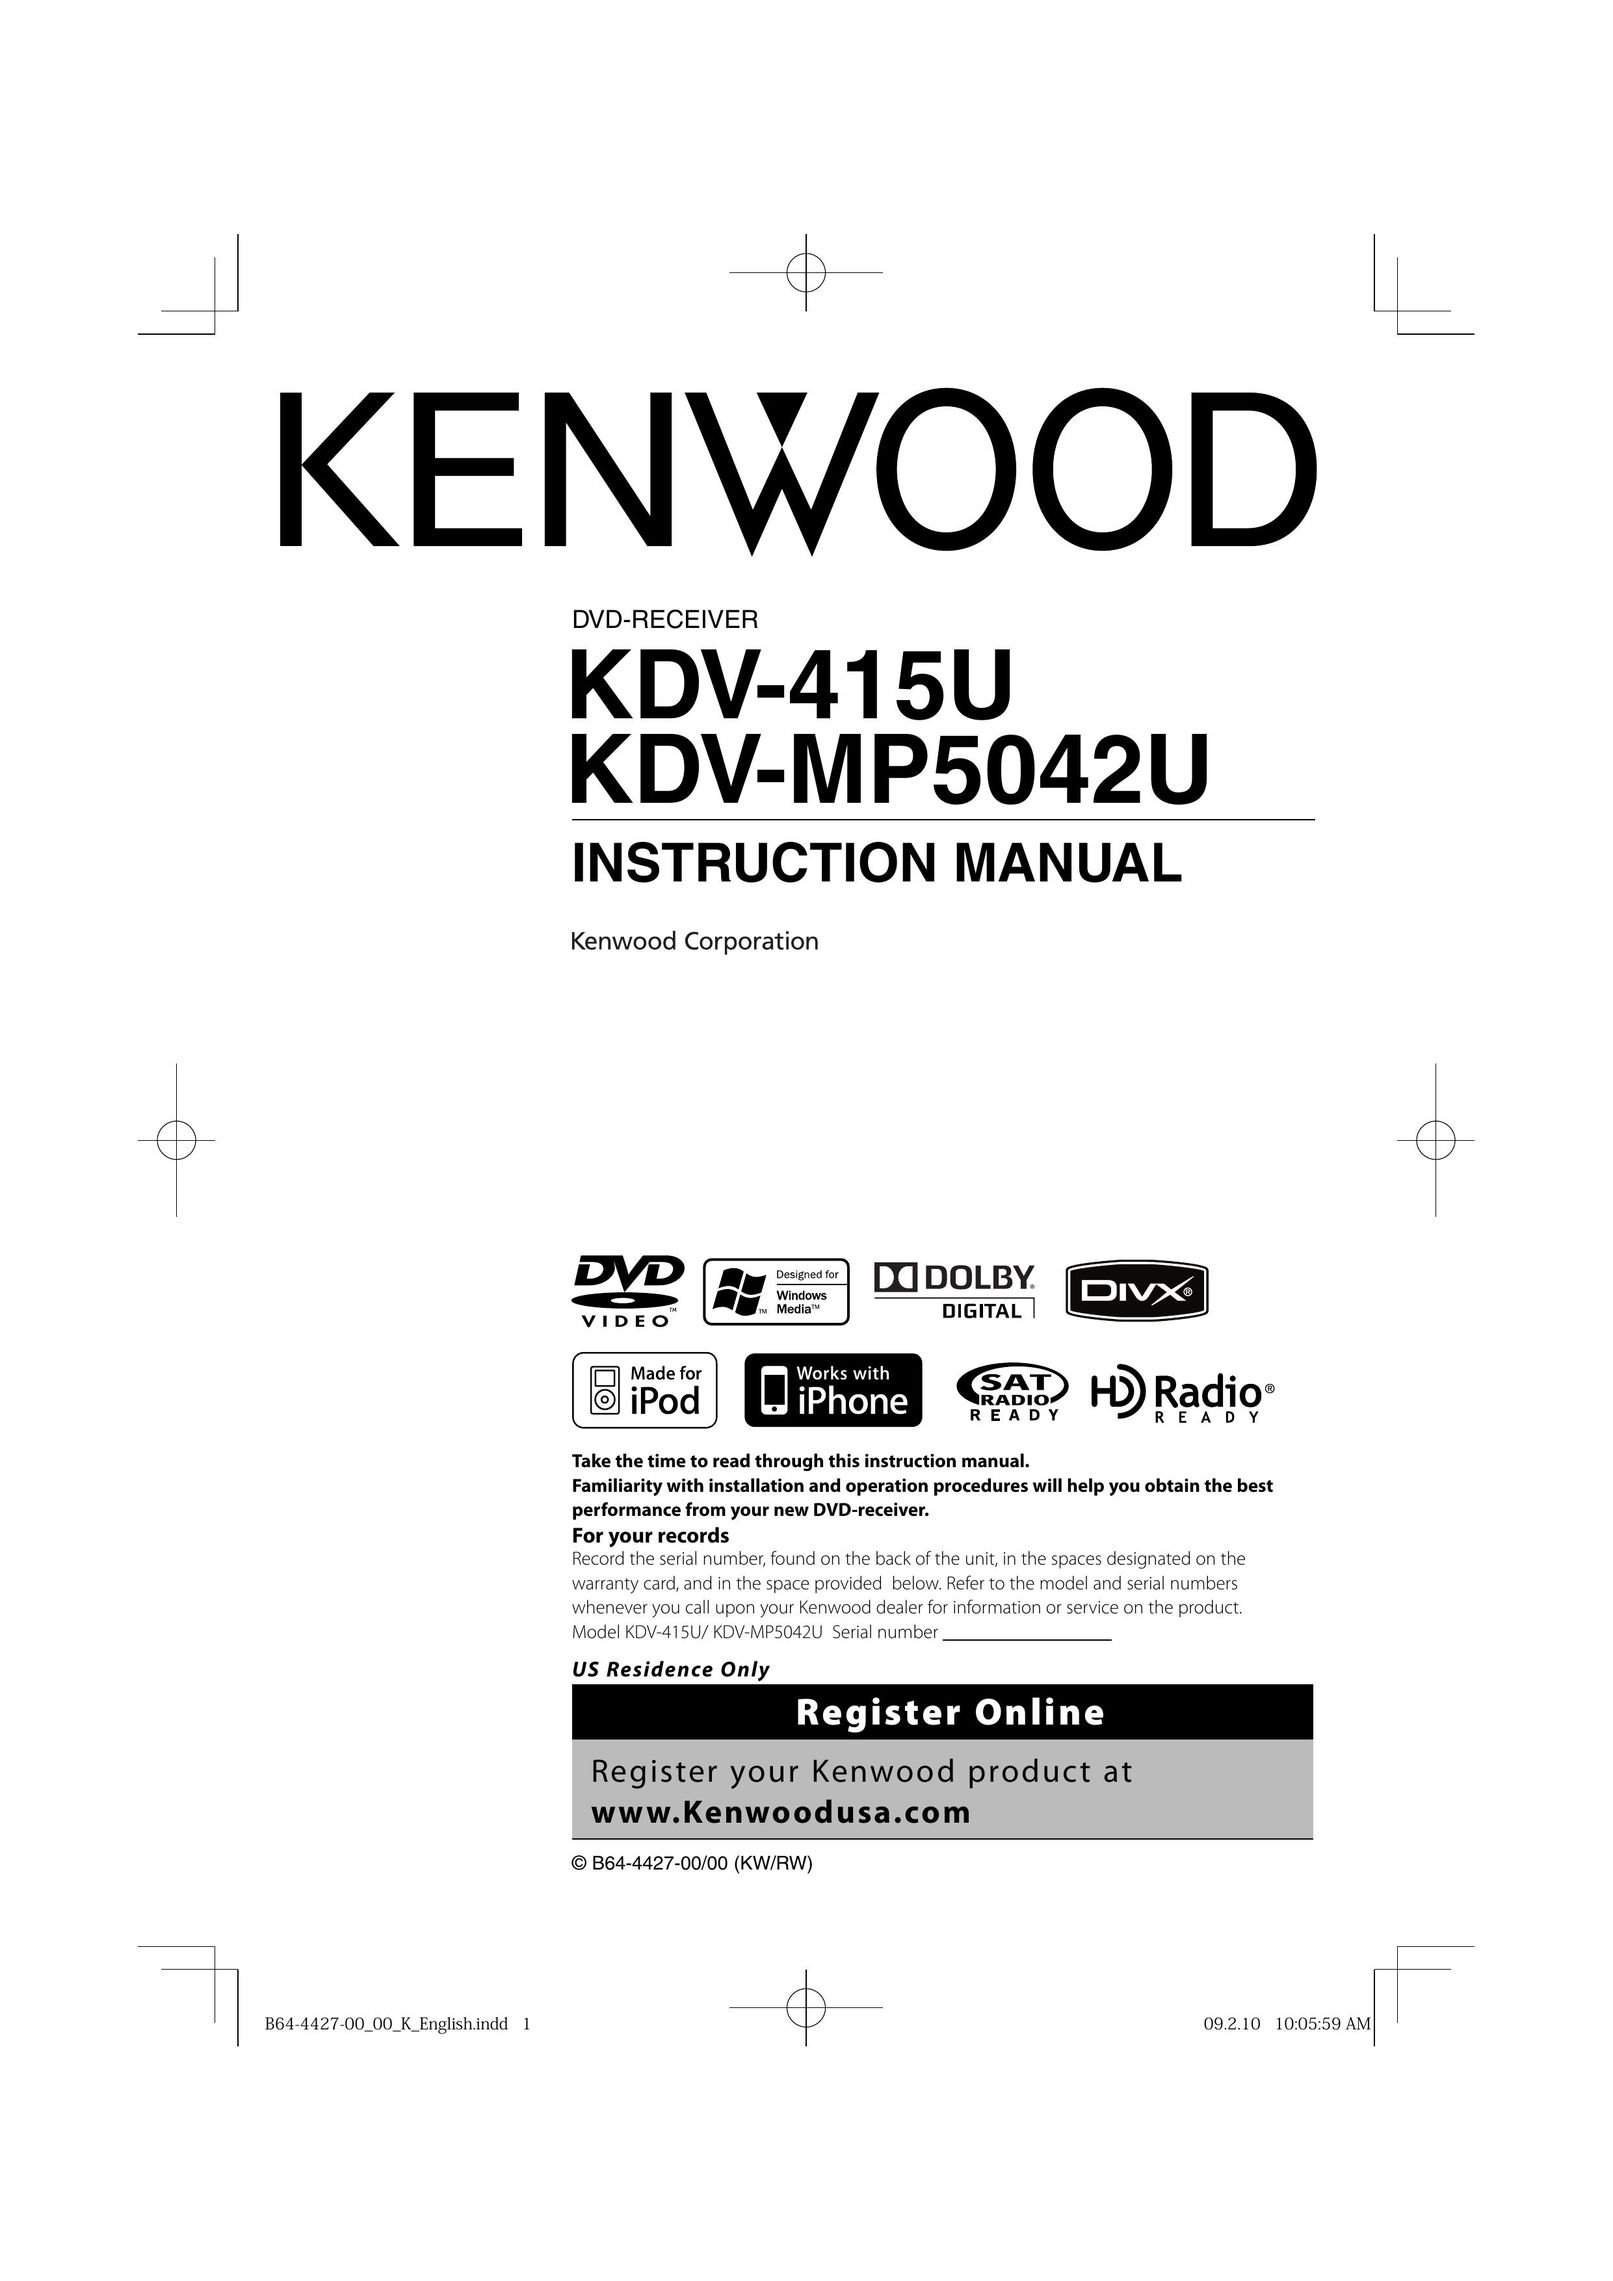 Kenwood KDV-MP5042U DVD Player User Manual